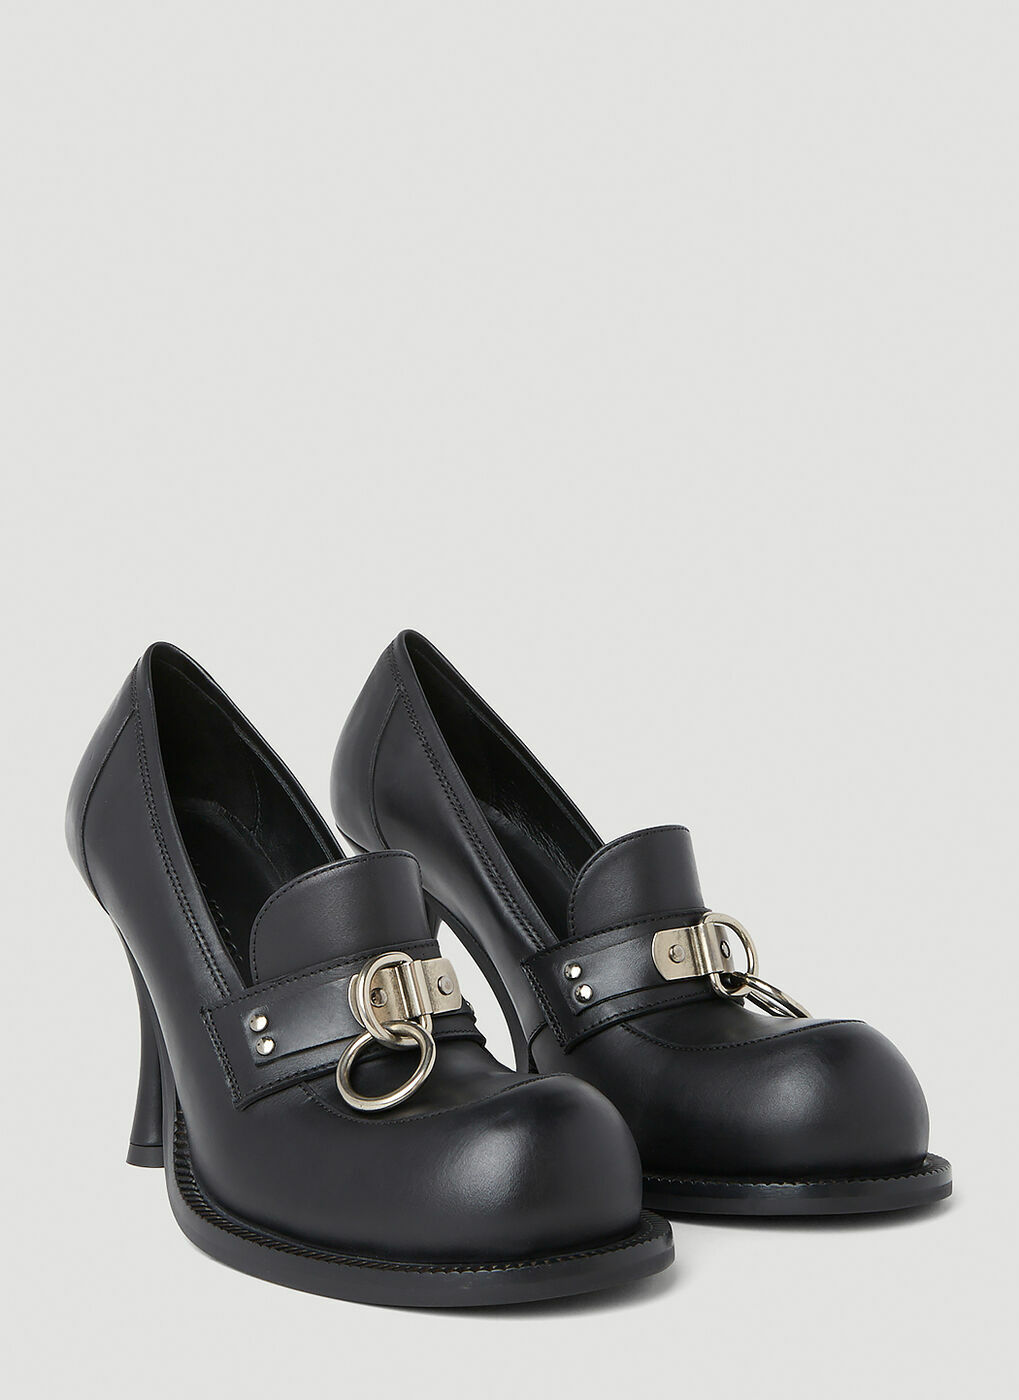 Martine Rose - Bulg High Heel Shoes in Black Martine Rose